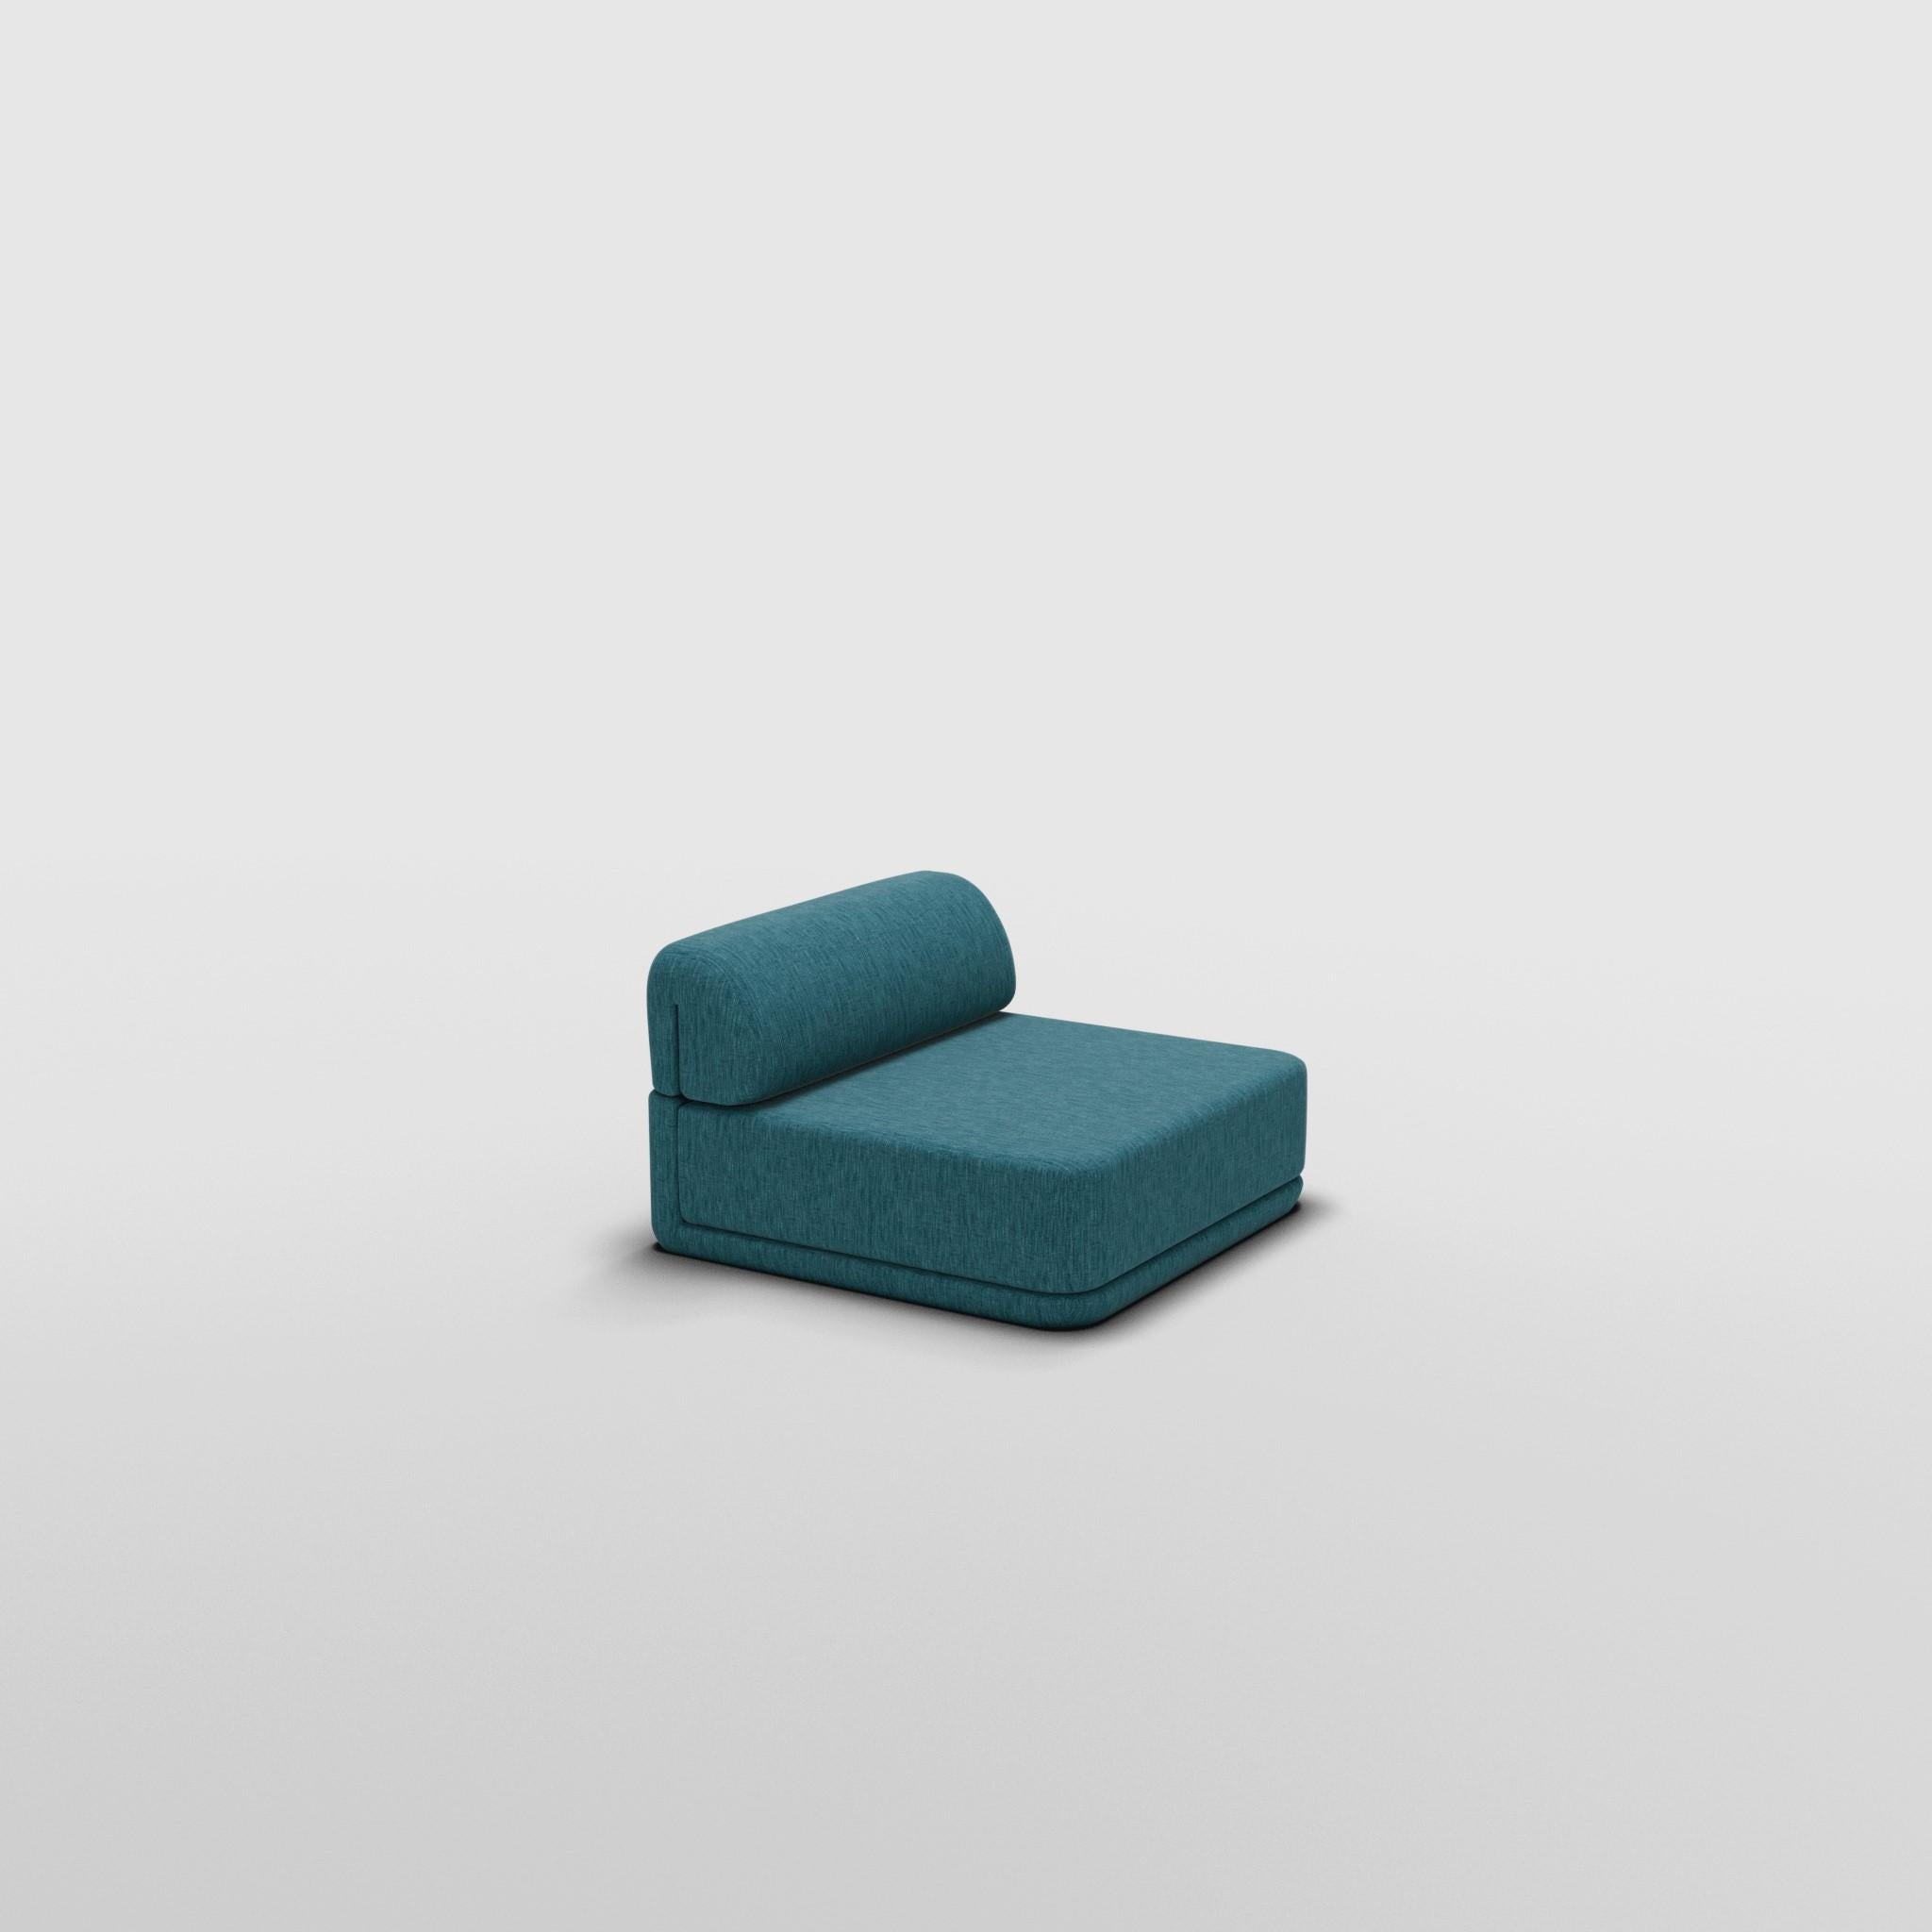 Cube Lounge Seat - Inspiré par les meubles de luxe italiens des années 70

Découvrez le canapé Cube, où l'art rencontre l'adaptabilité. Son design sculptural et son confort personnalisable créent des possibilités infinies pour votre espace de vie.